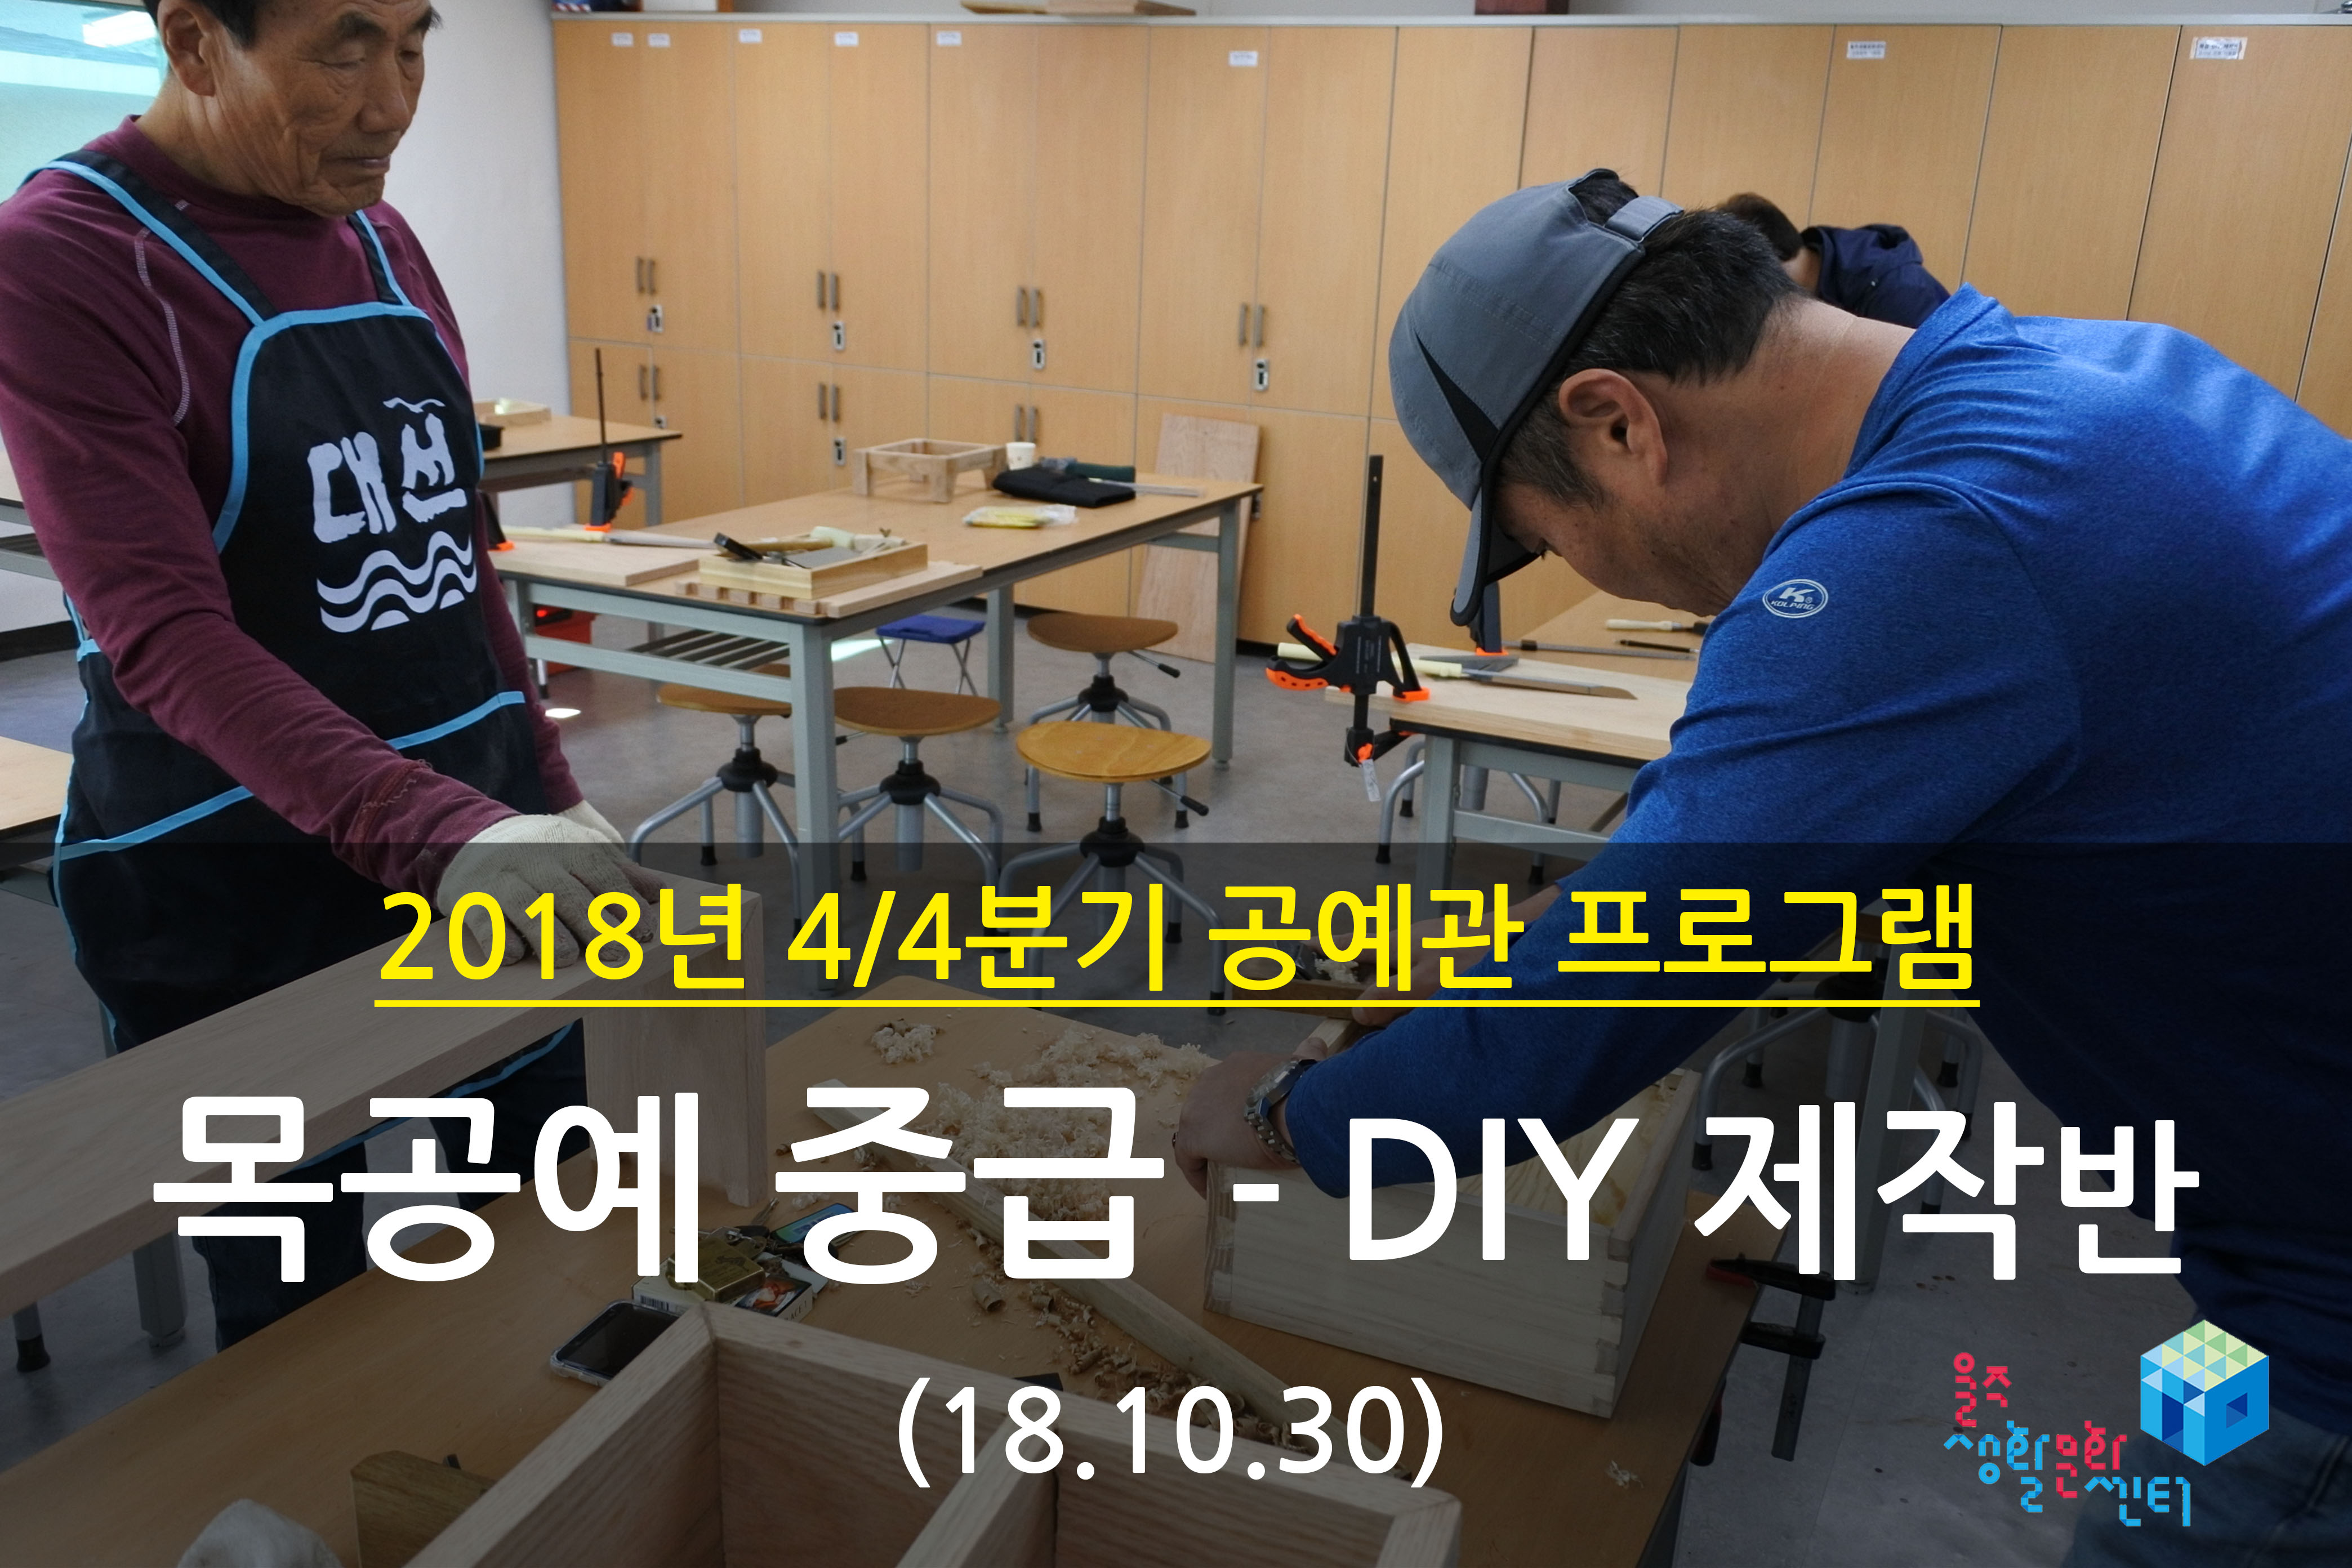 2018.10.30 _ 목공예 중급 - DIY 제작반 _ 4/4분기 4주차 수업